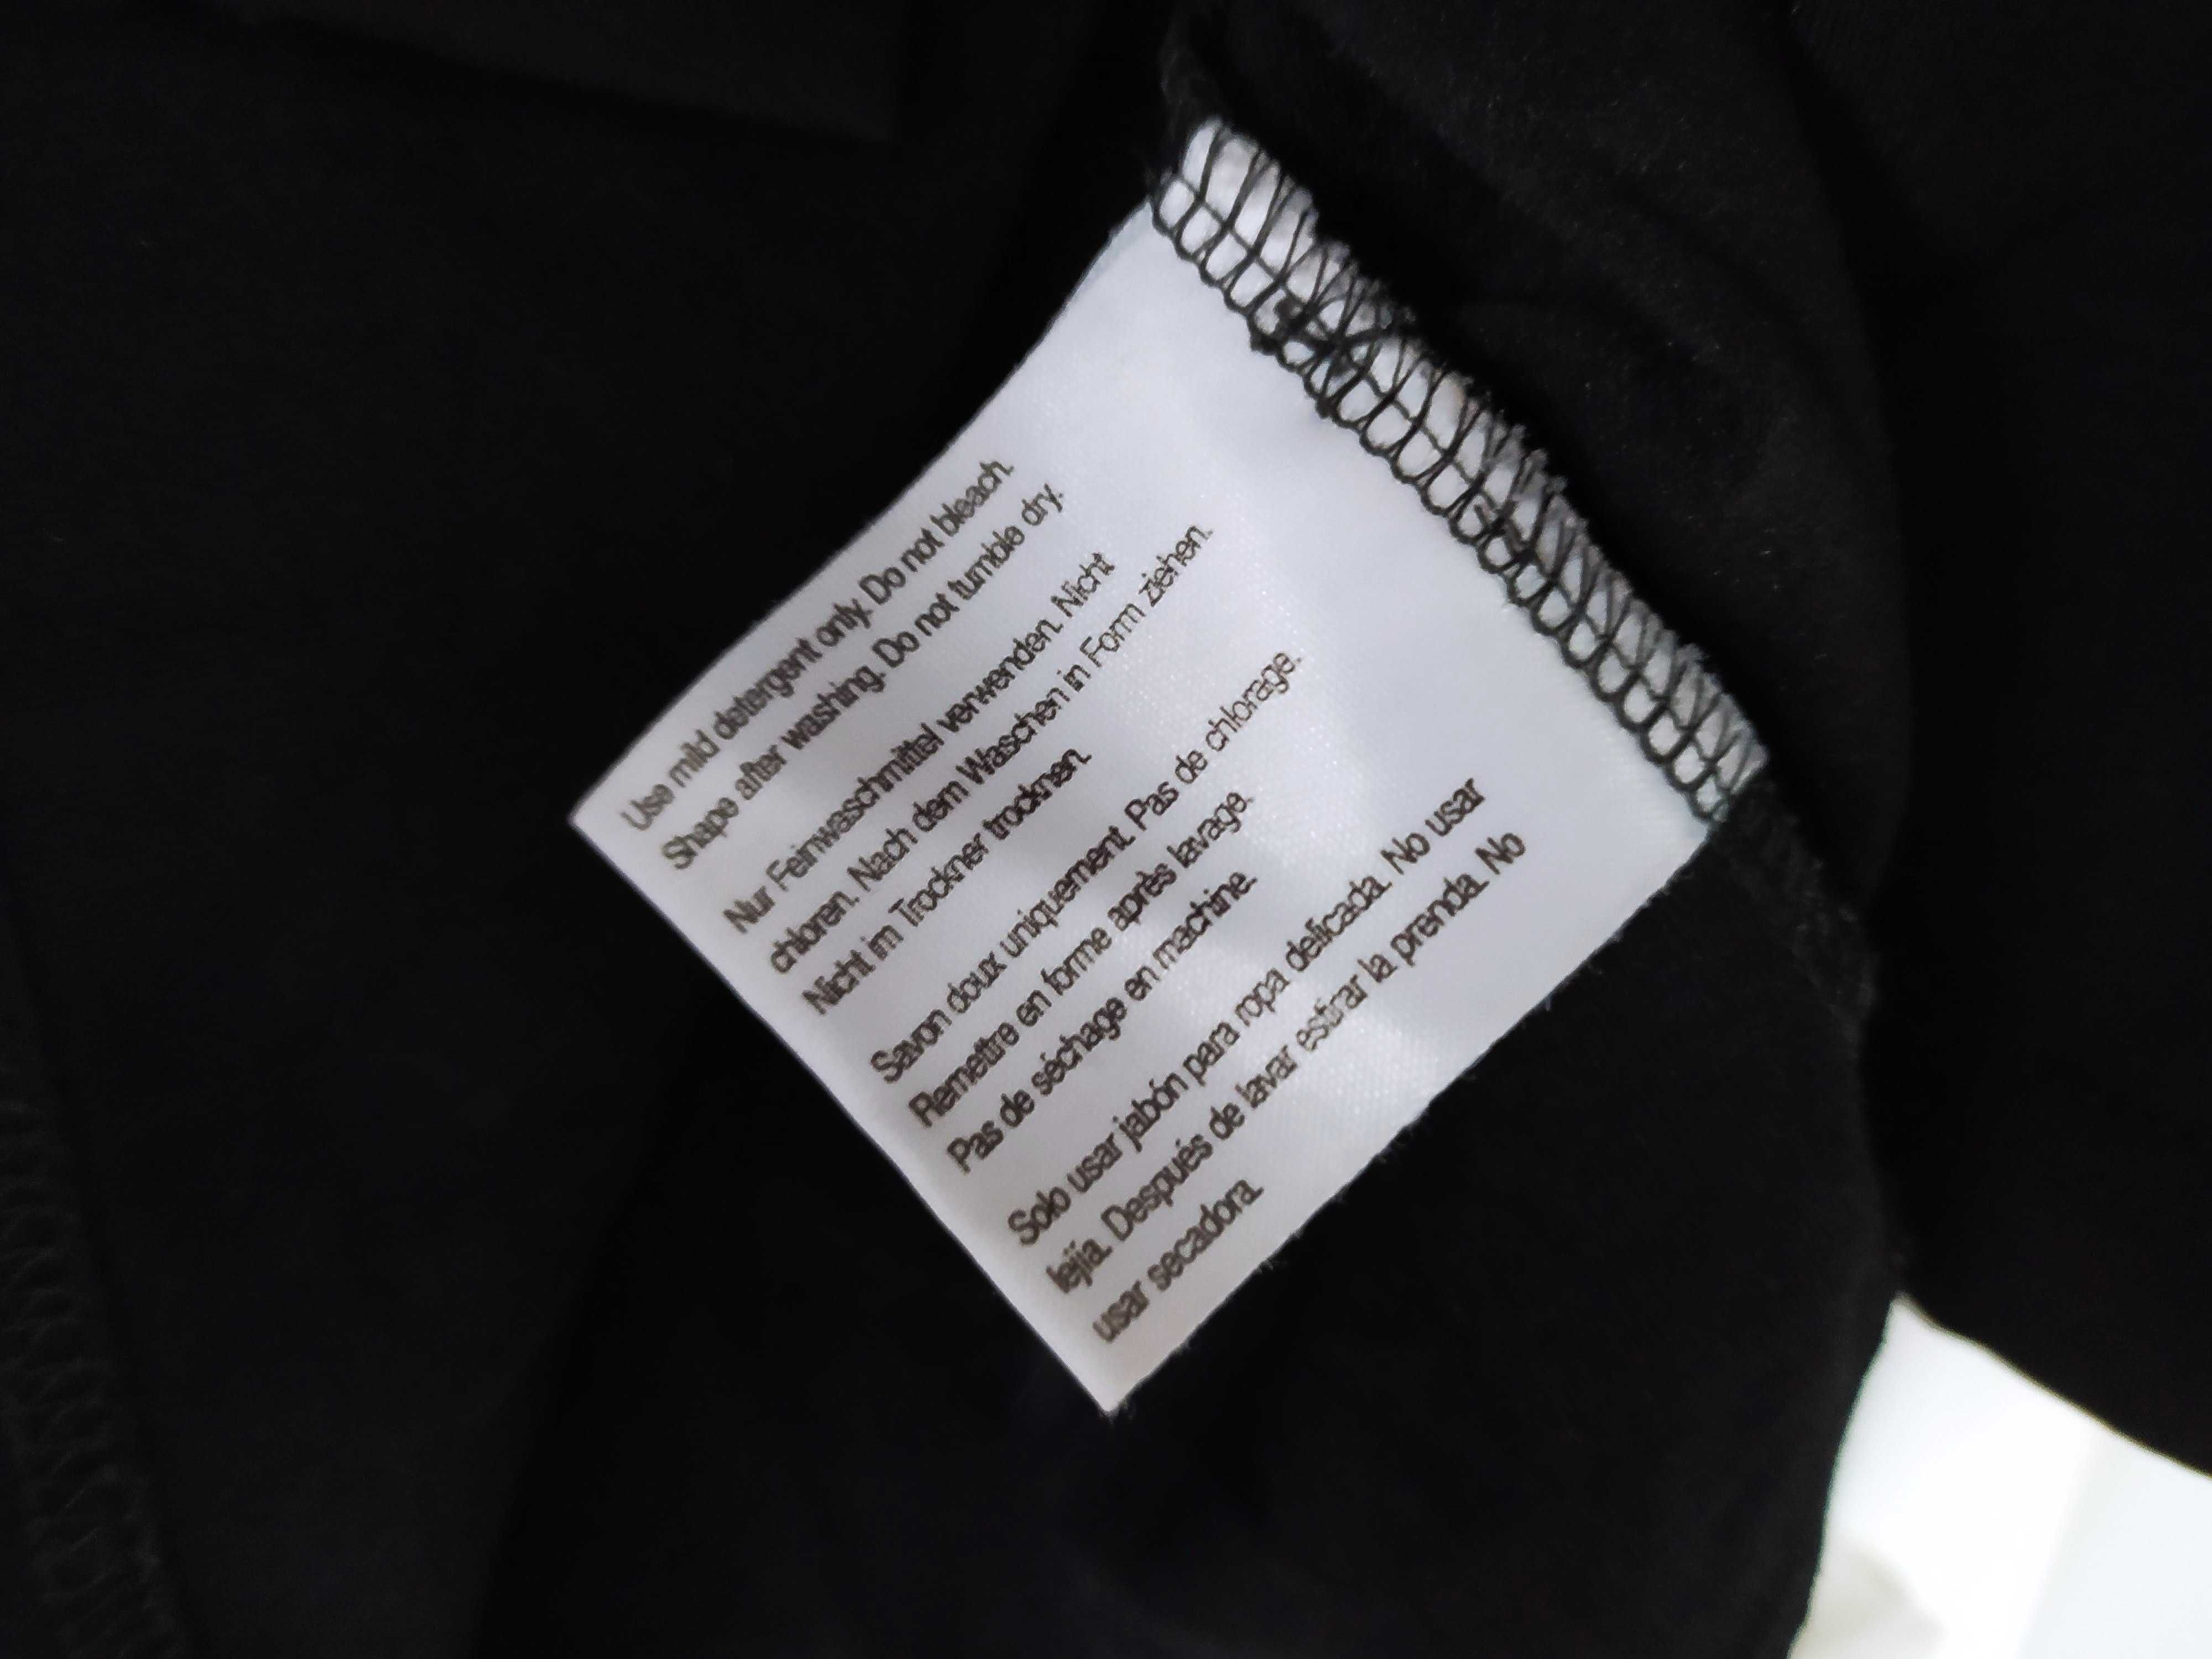 Hugo Boss koszula damska M czarna założona kilka razy